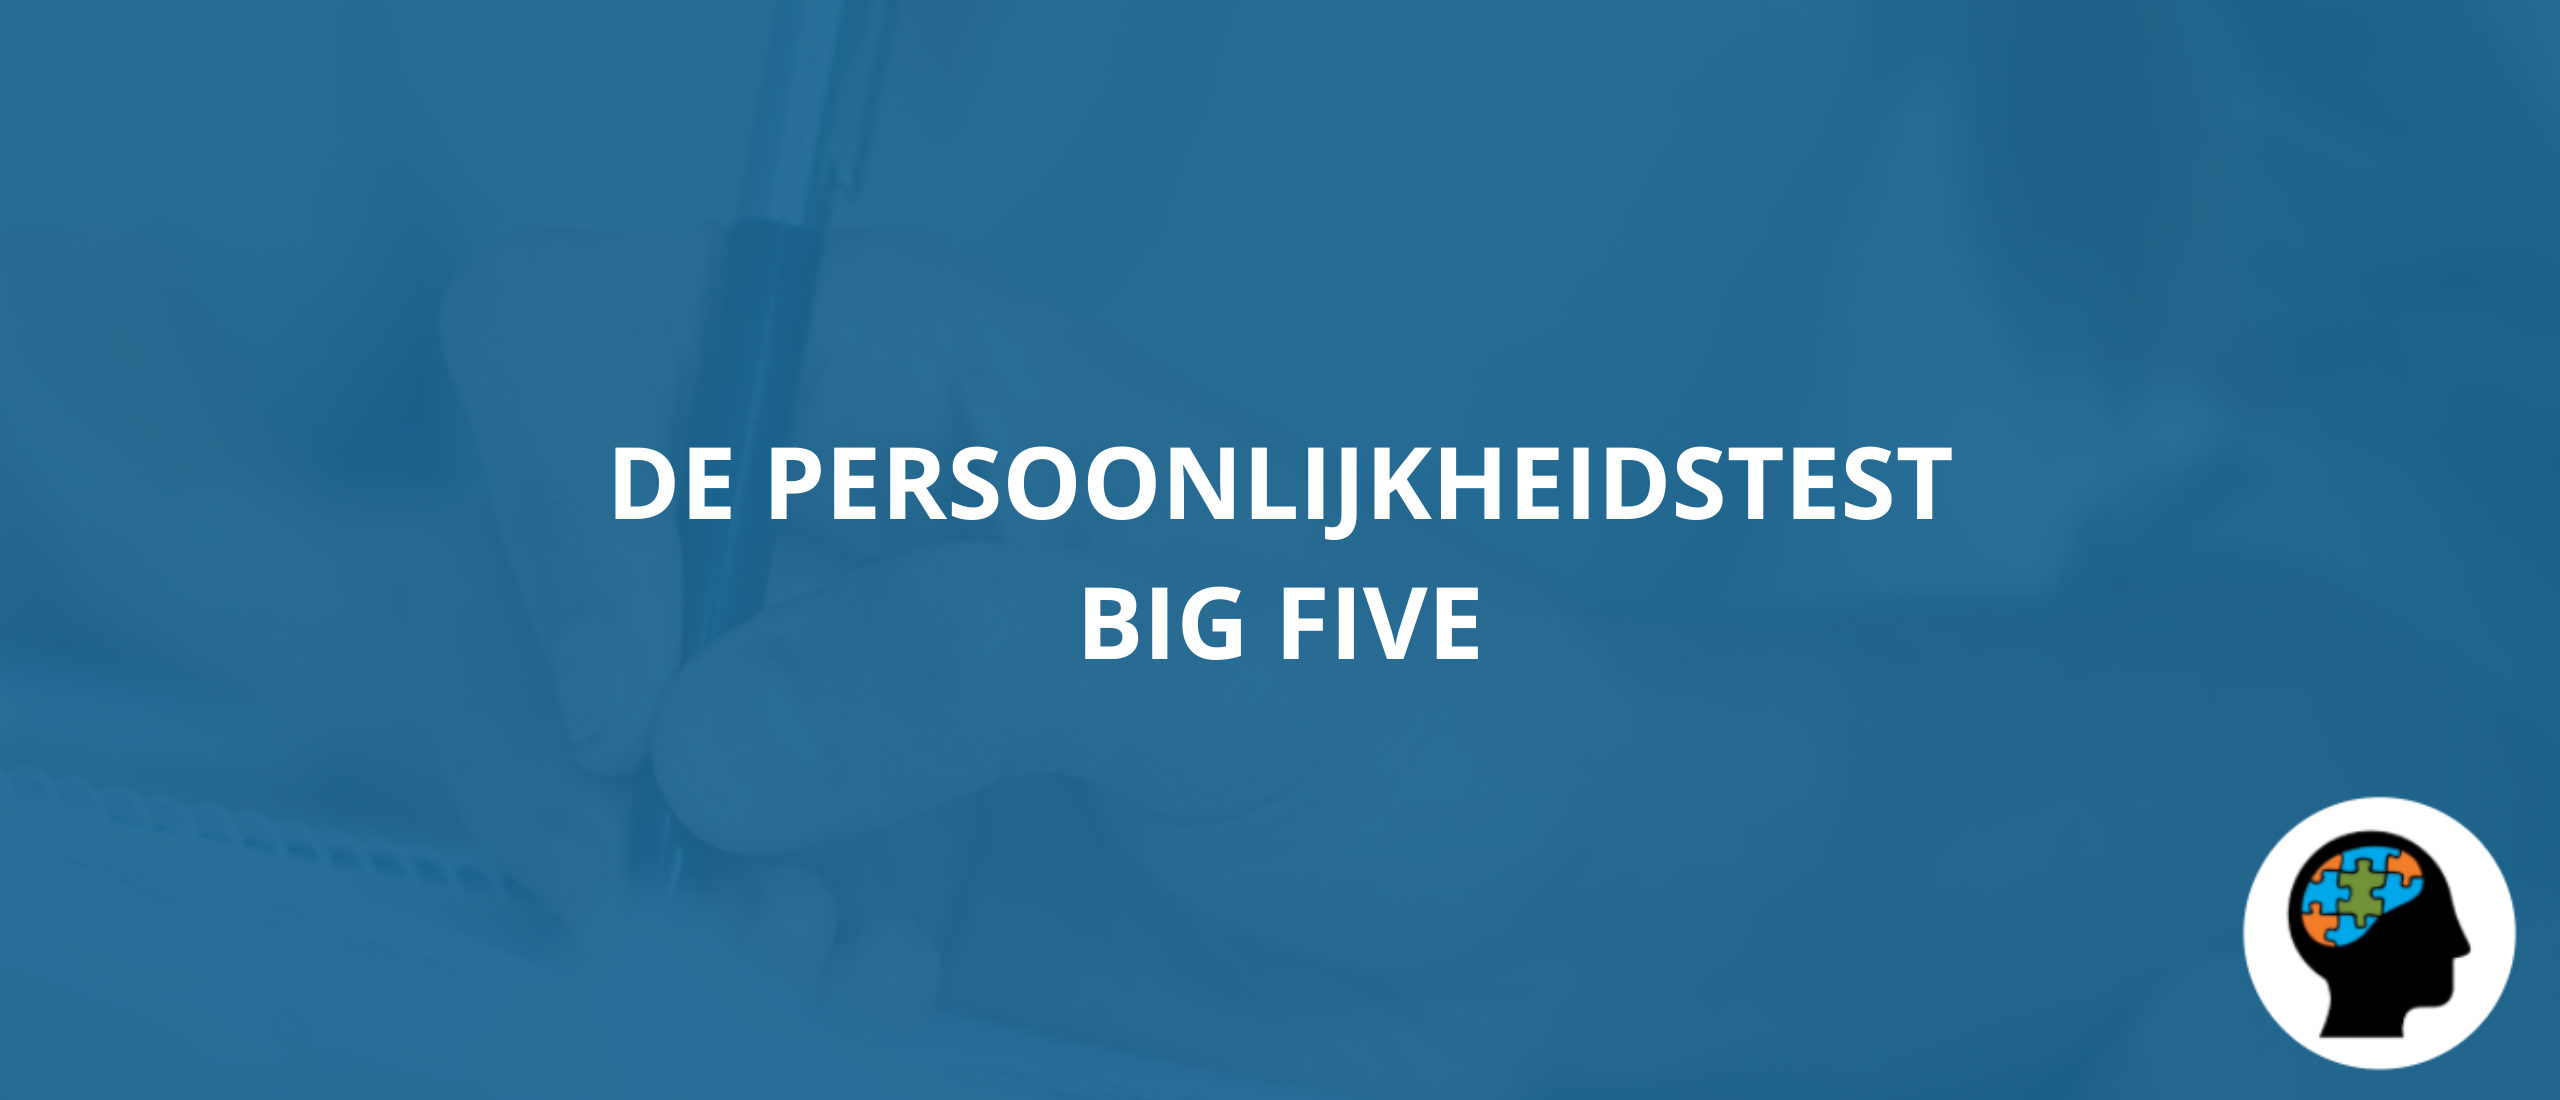 De persoonlijkheidstest Big Five